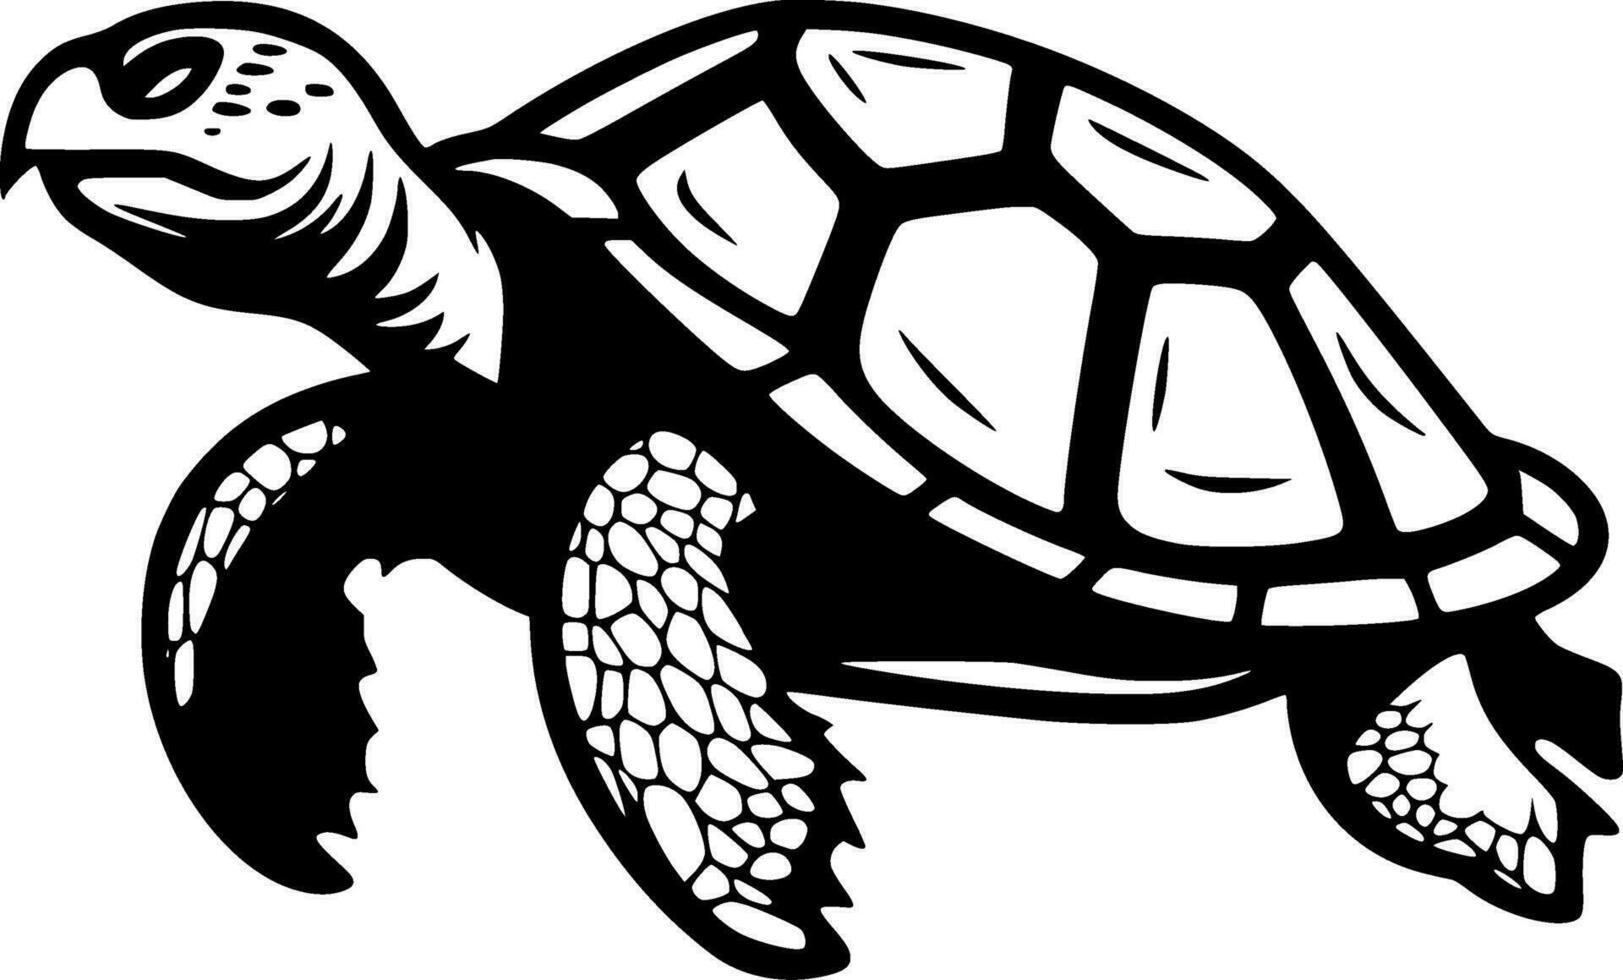 sköldpadda, minimalistisk och enkel silhuett - vektor illustration